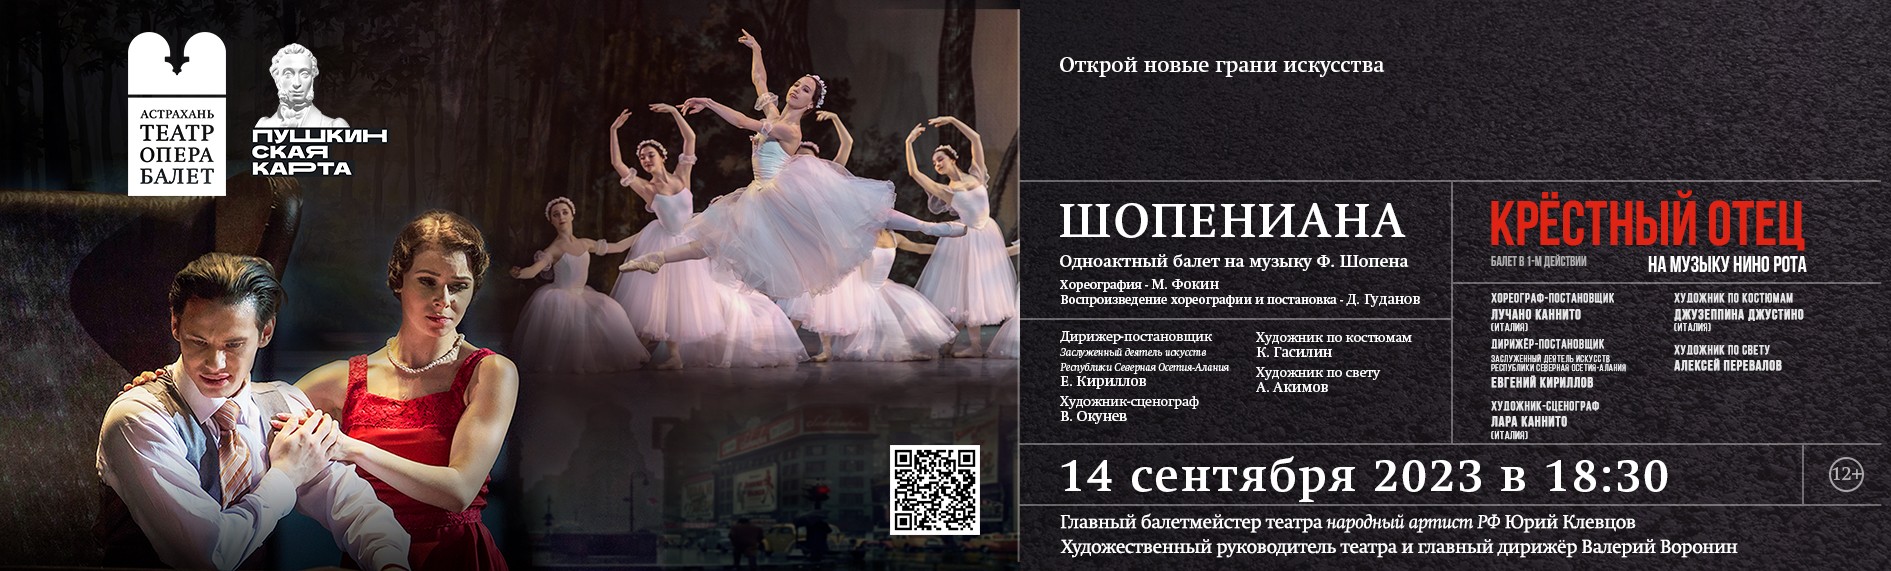 Театр оперы и балета астрахань афиша